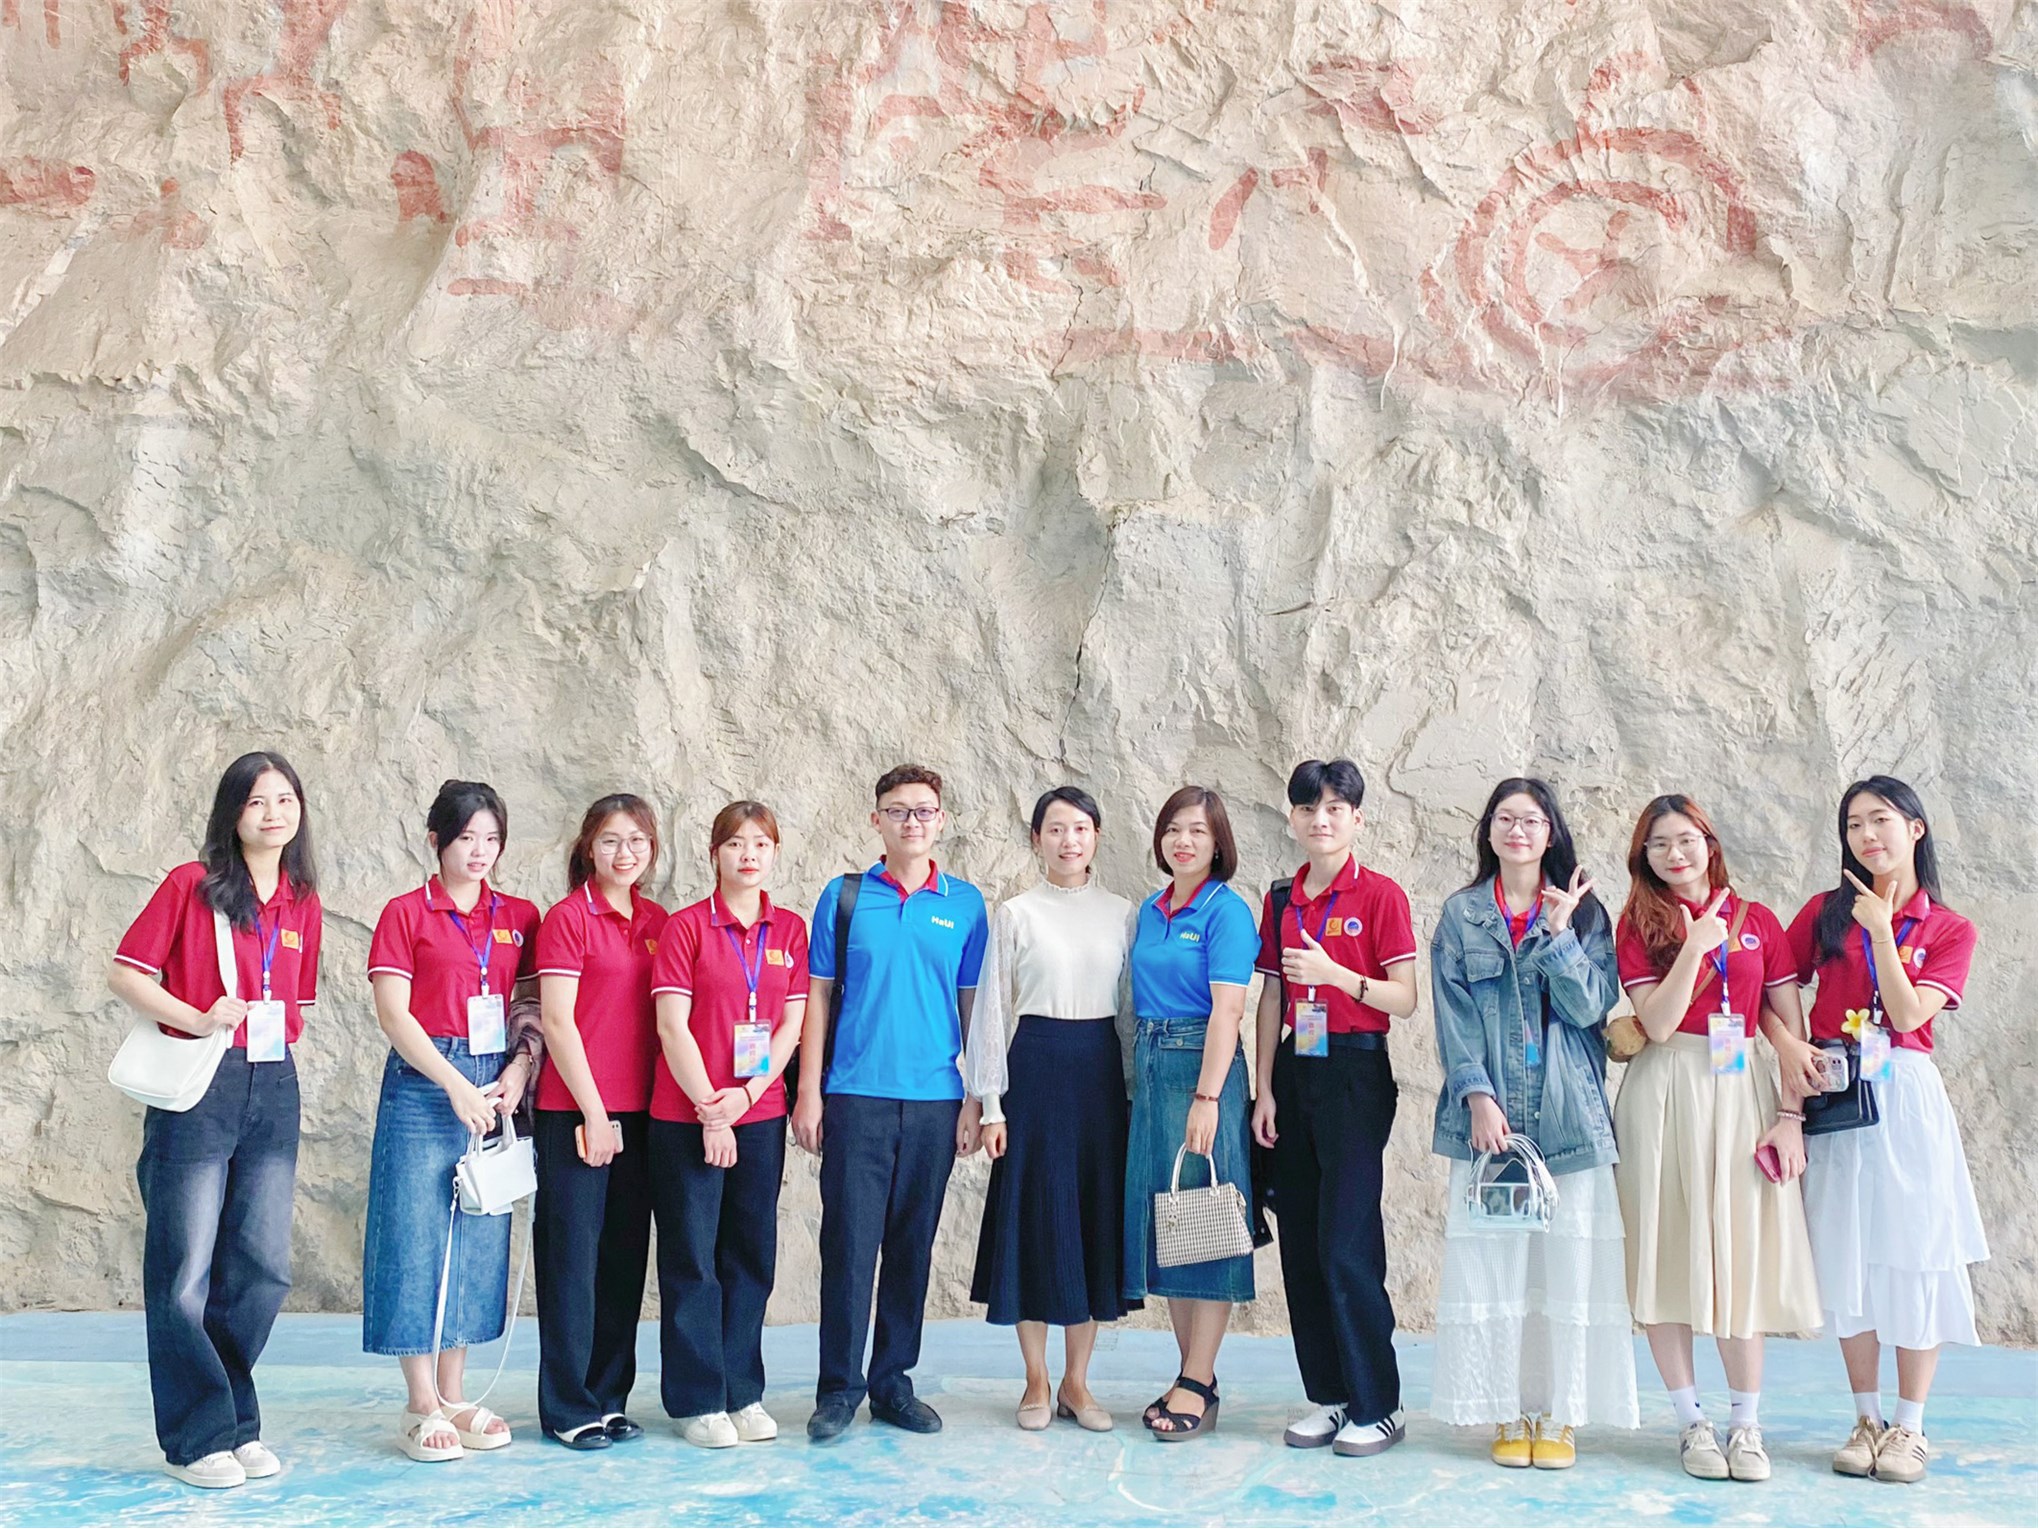 Sinh viên Trường Ngoại ngữ - Du lịch tham gia chương trình “Giao lưu biểu diễn nghệ thuật dân tộc quốc tế” tại Quảng Tây, Trung Quốc